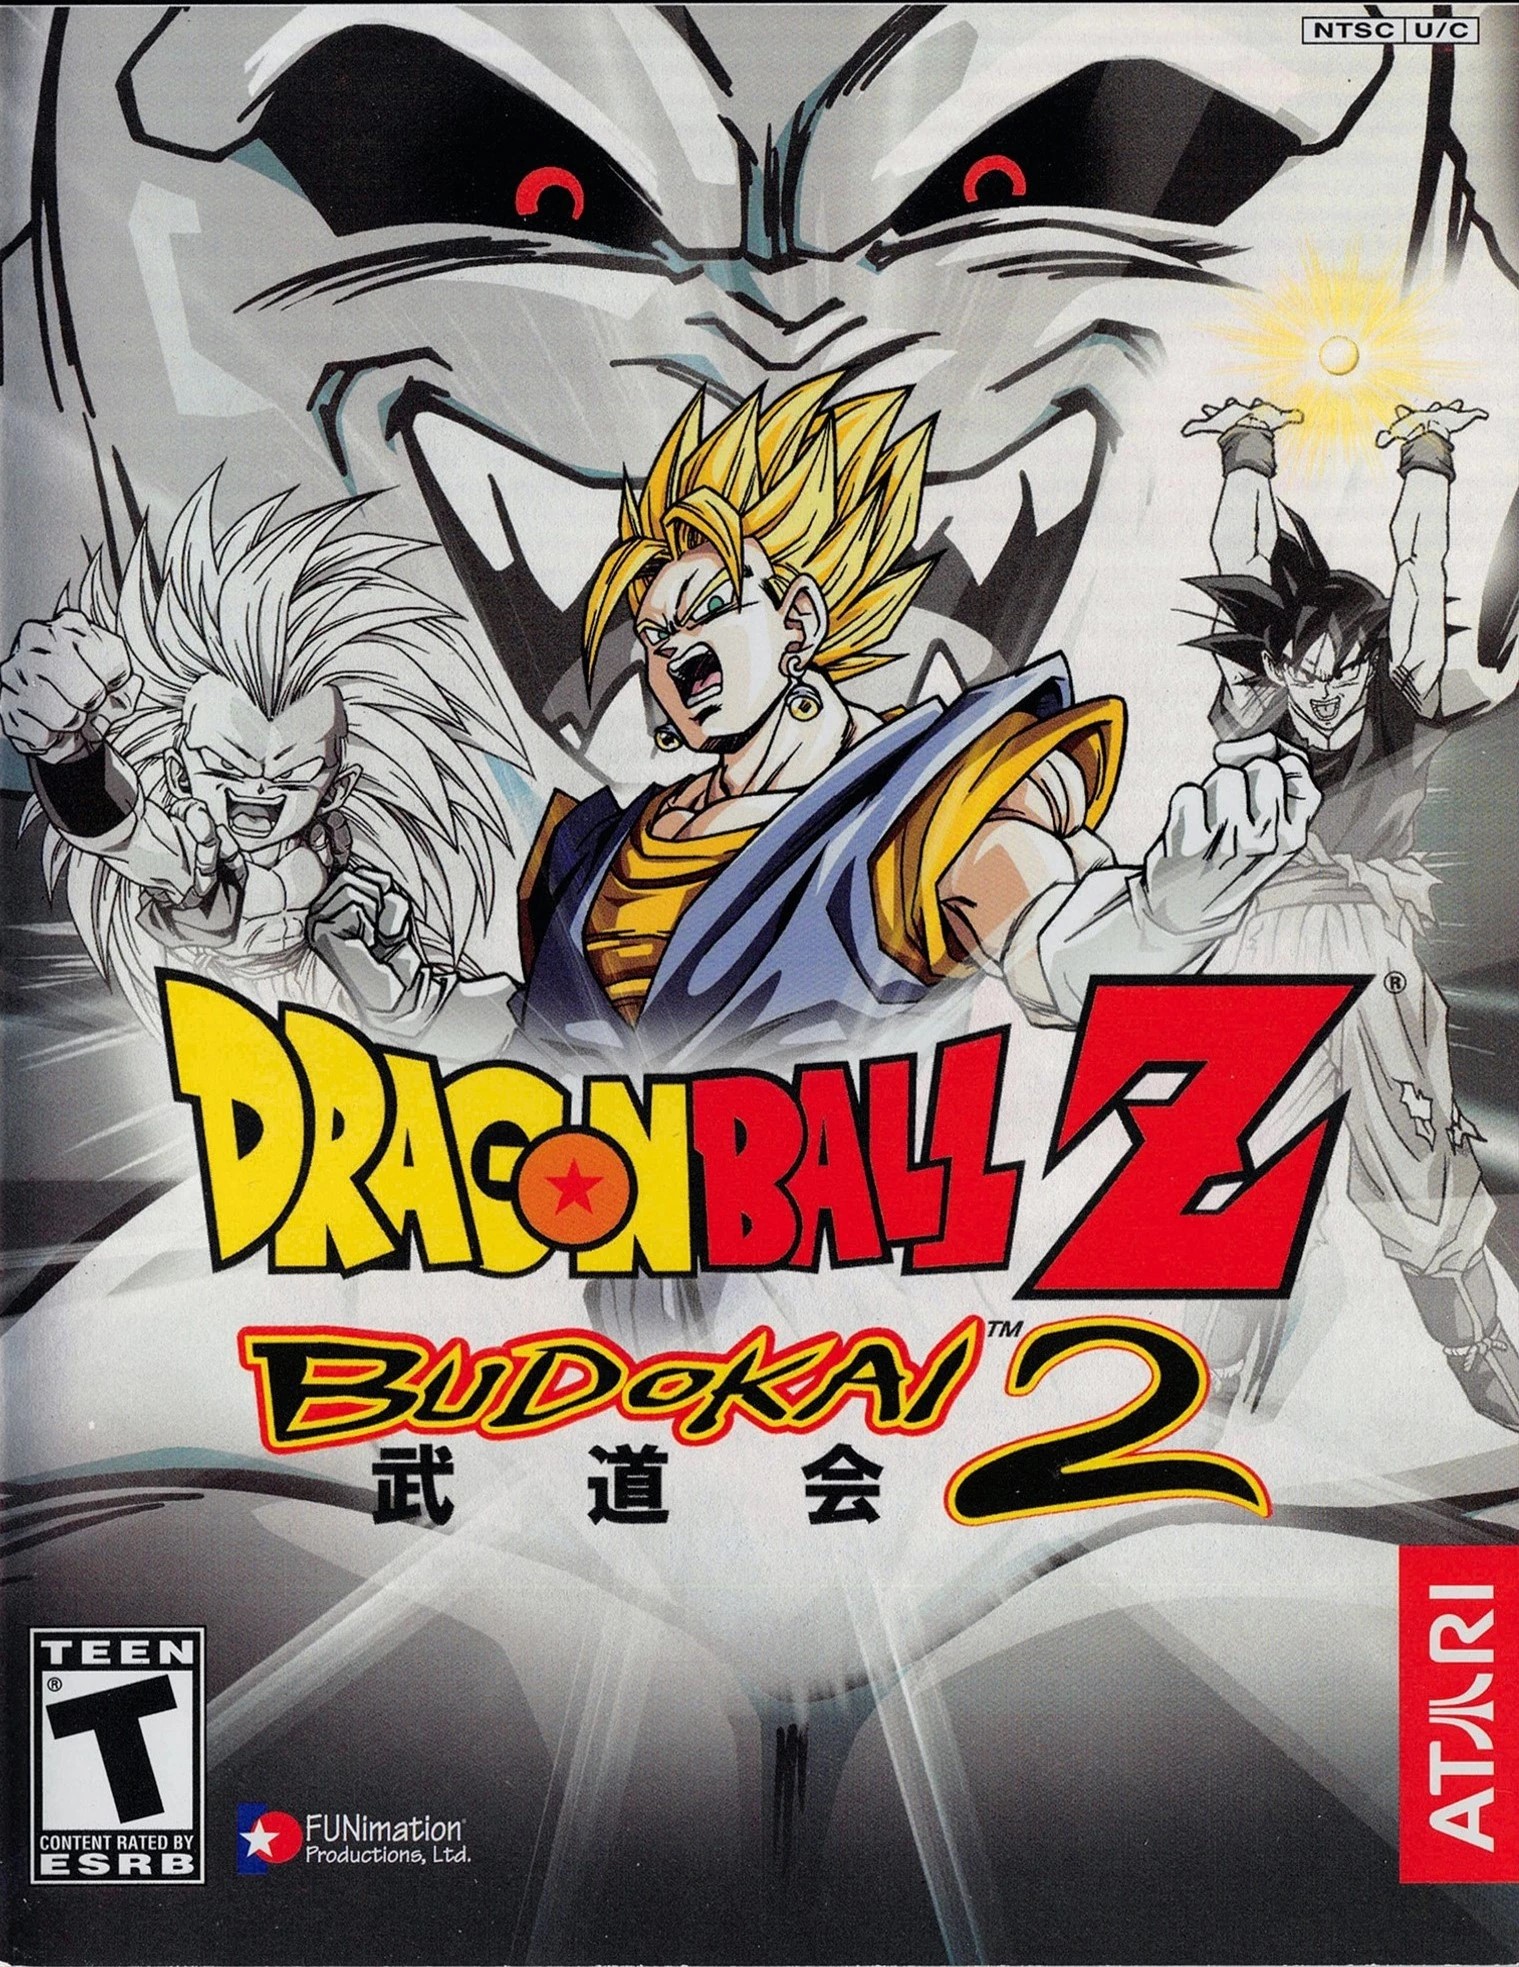 Dragon Ball Z: Majin Buu Saga, Board Game